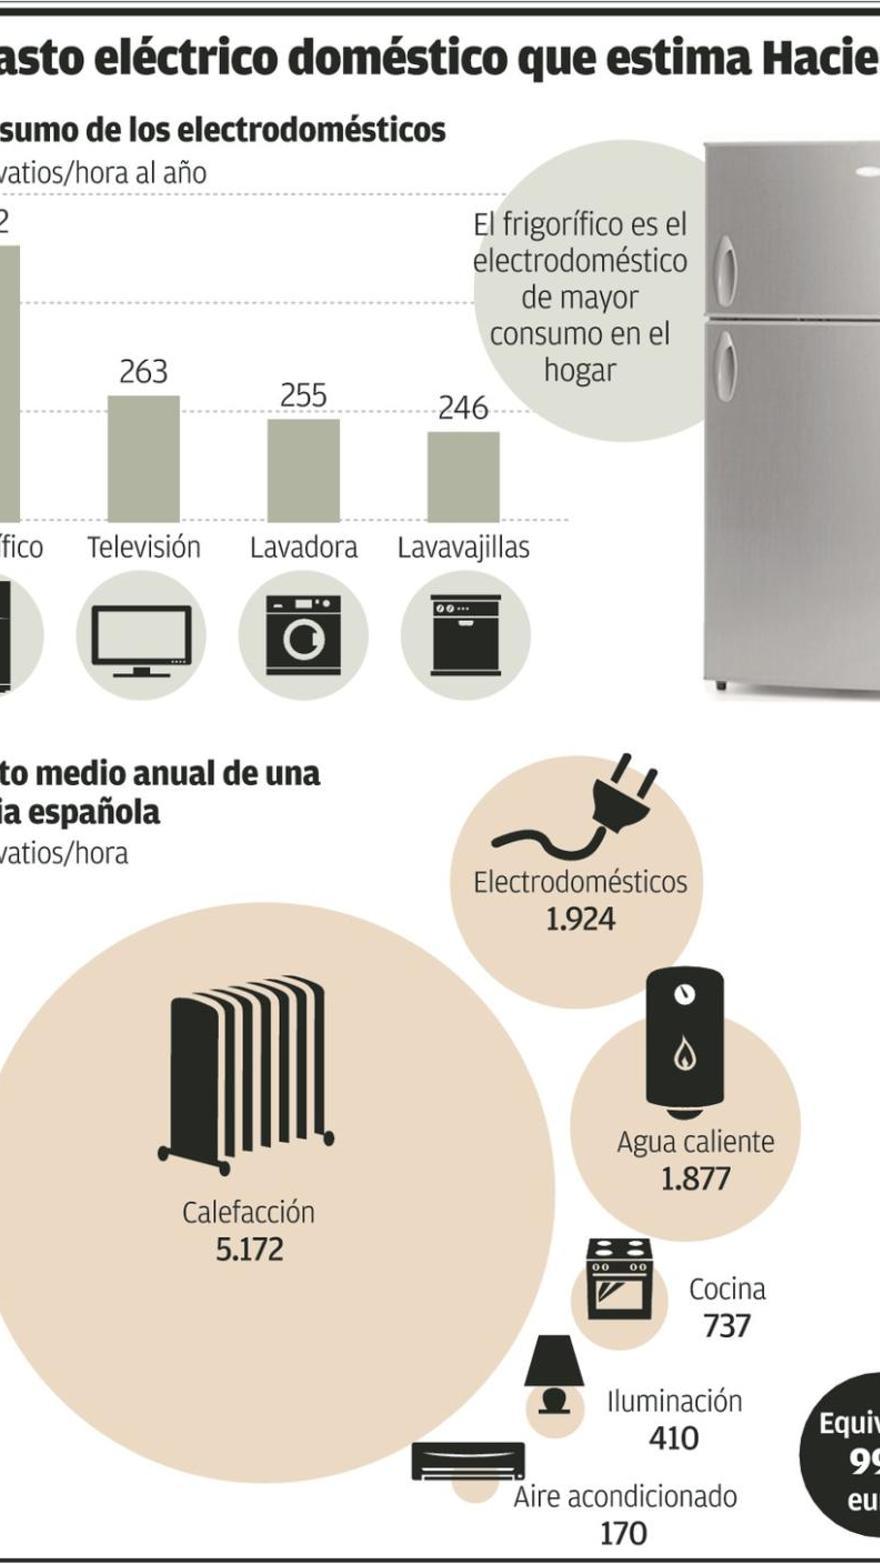 La nevera de Hacienda gasta cuatro veces más que un electrodoméstico  eficiente - La Nueva España